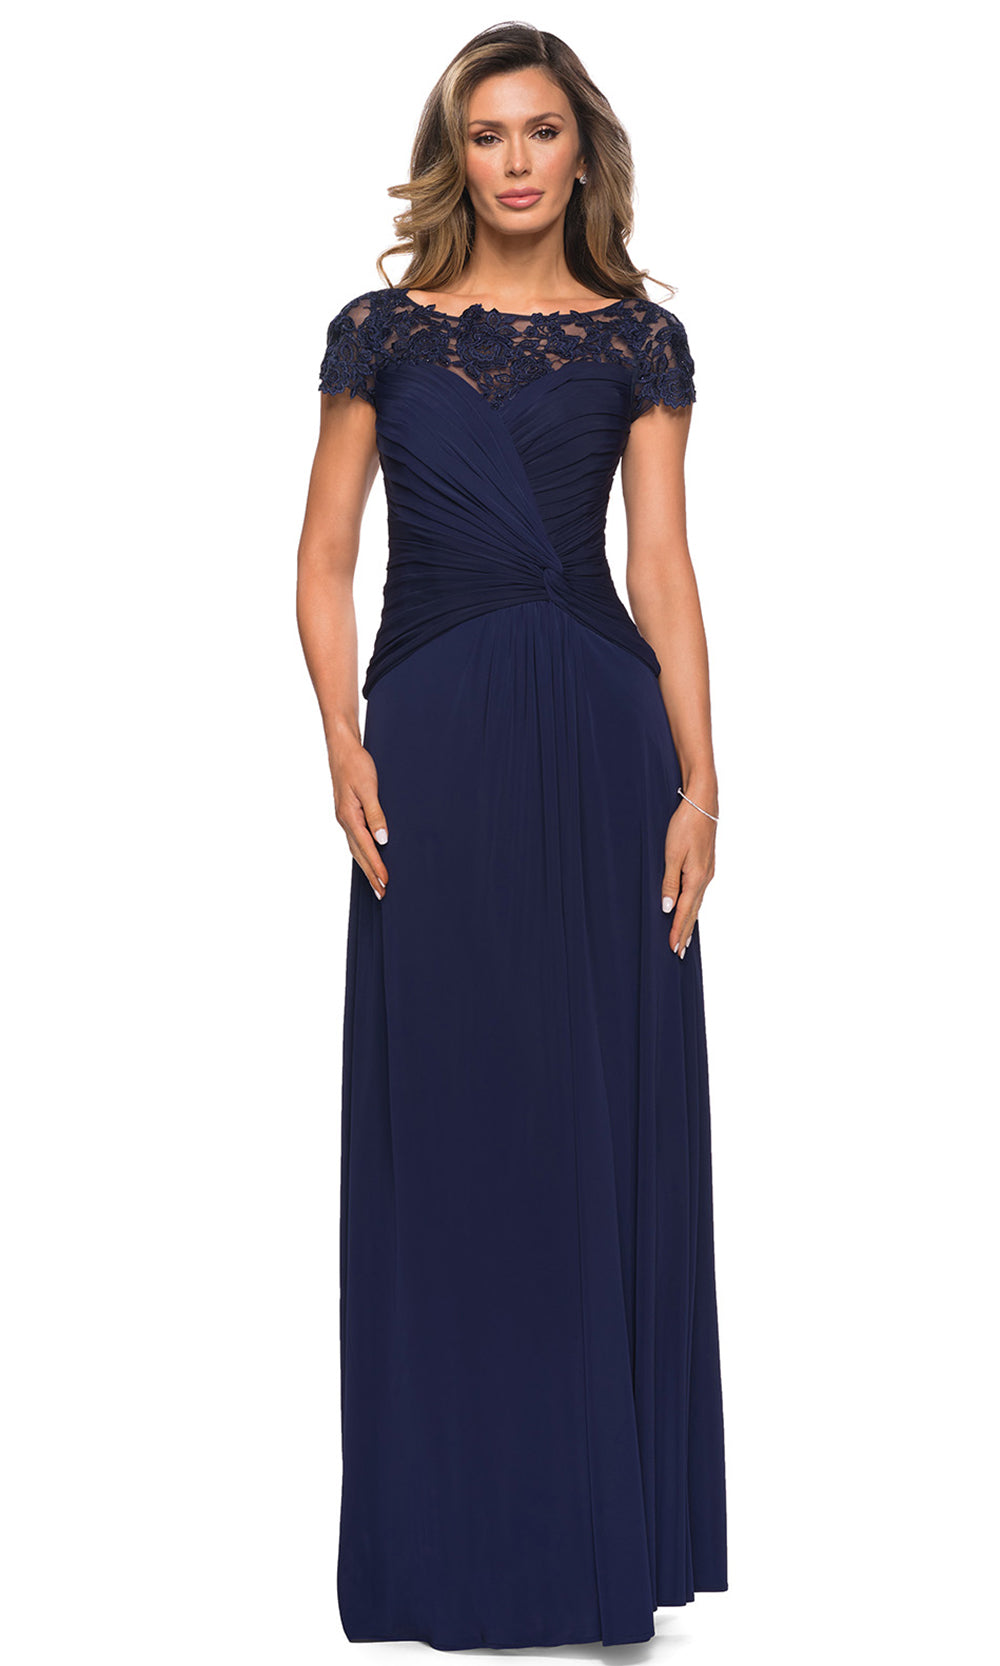 La Femme - 28029 Floral Lace Illusion Bateau Dress In Blue